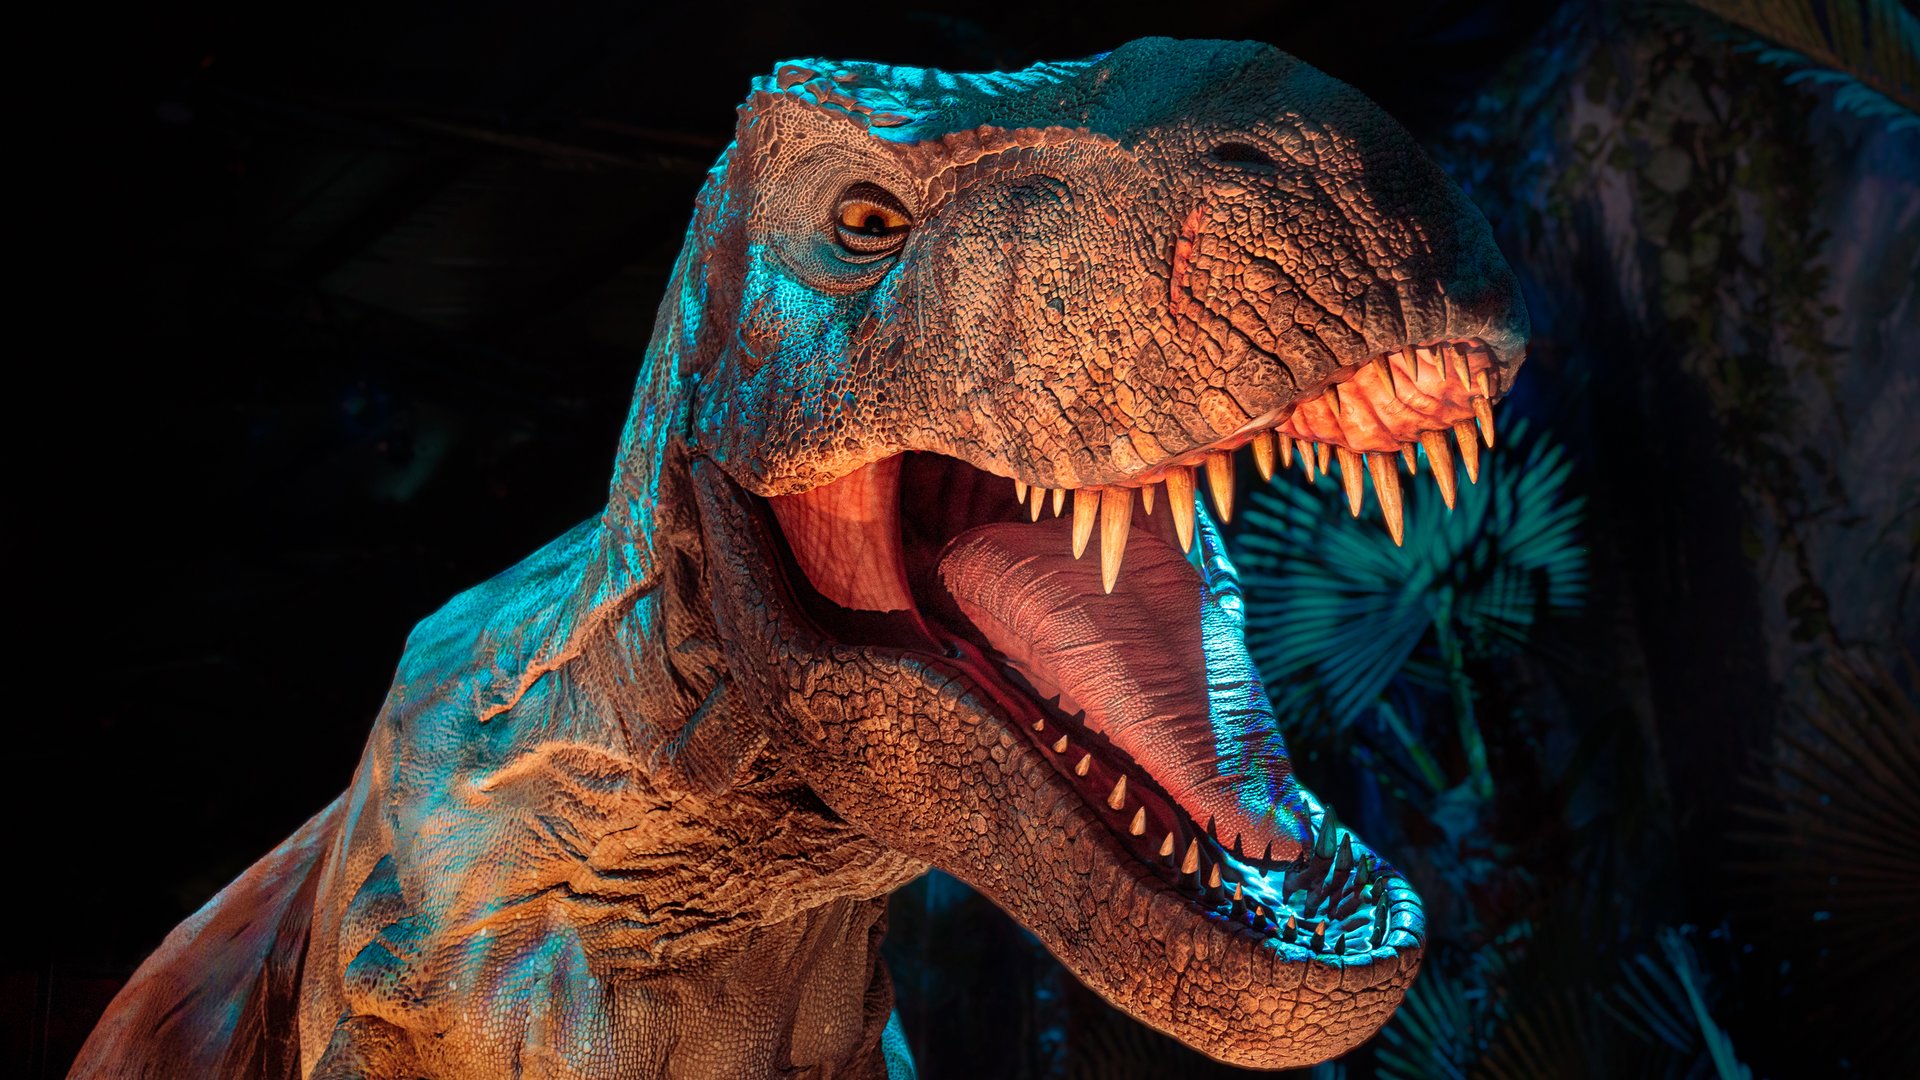 #„Jurassic World: The Exhibition“ nur noch für kurze Zeit in Köln – jetzt noch Tickets sichern